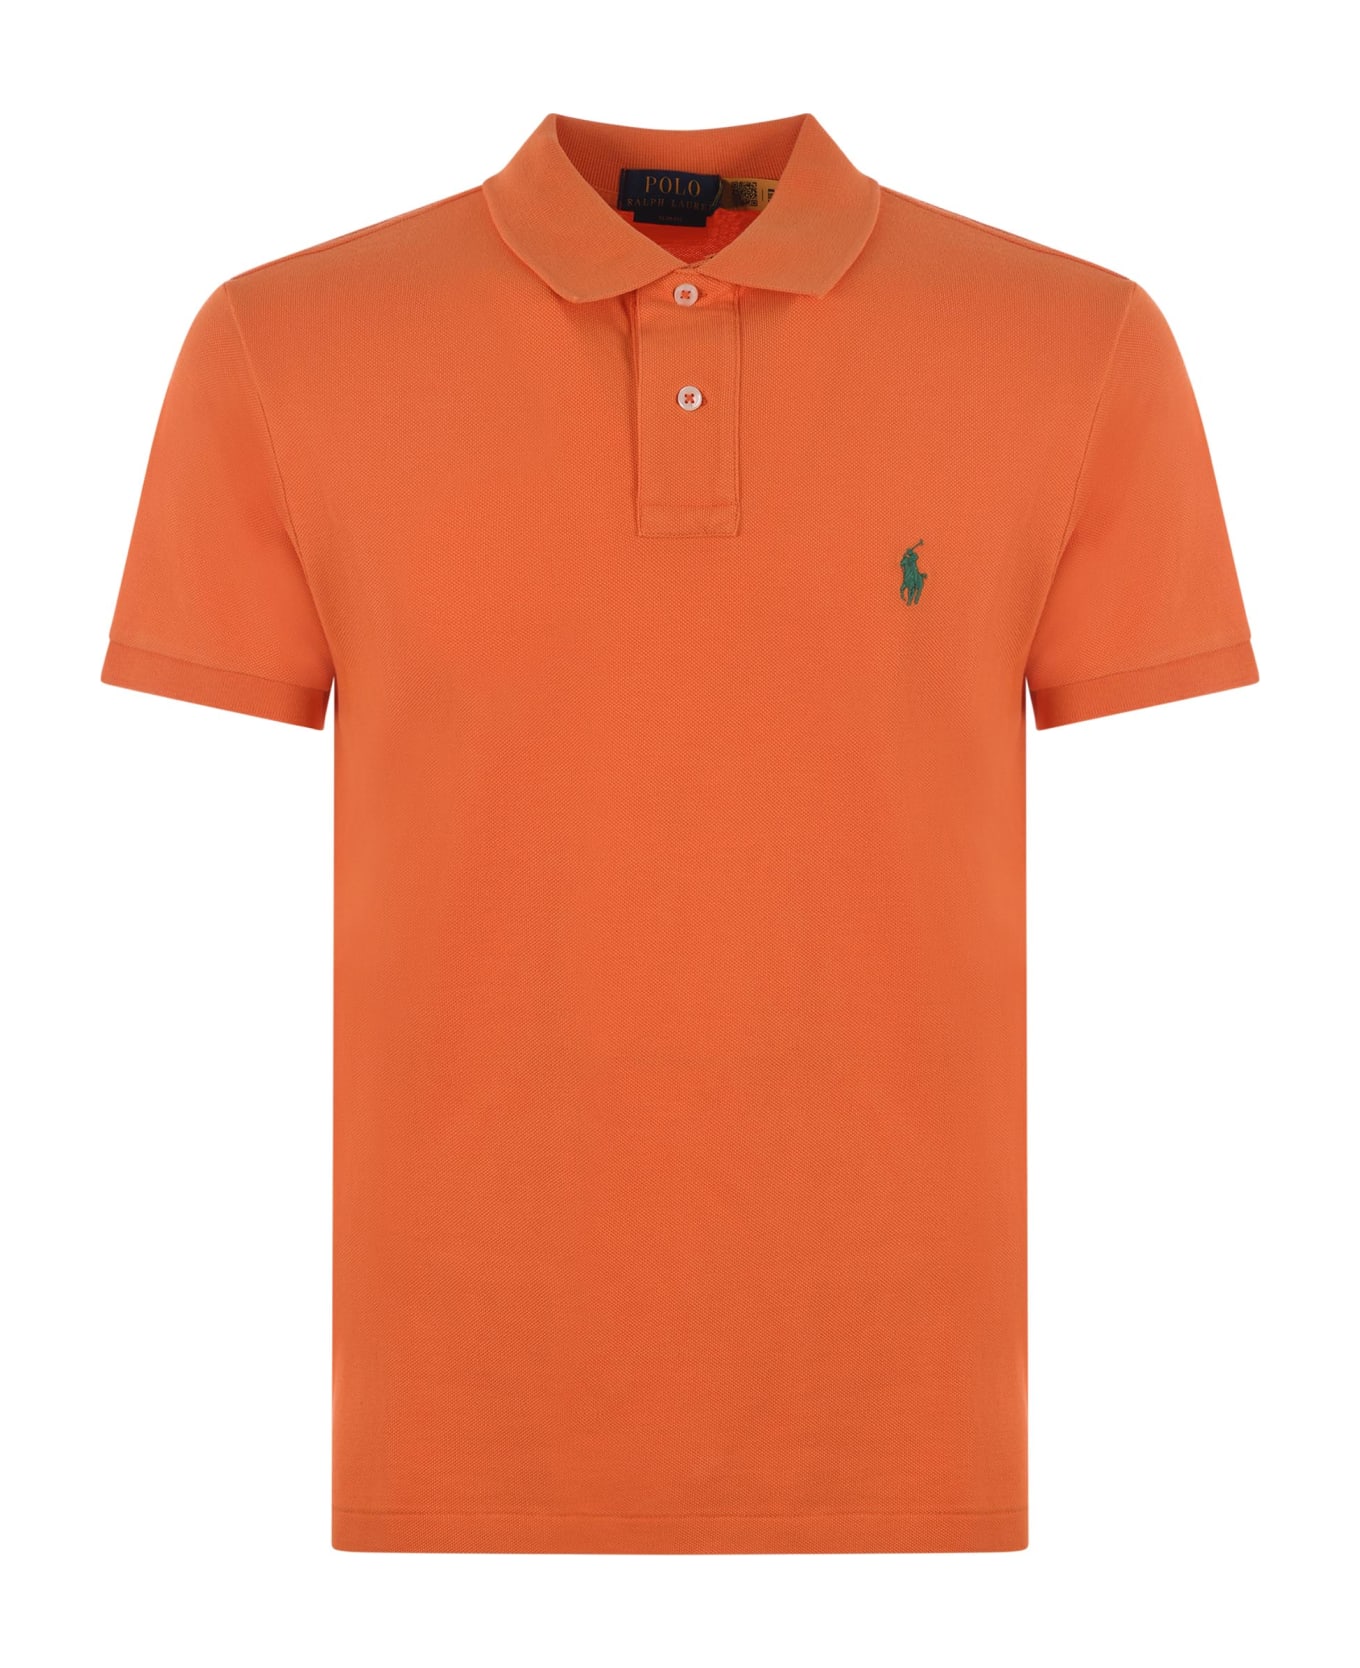 Polo Ralph Lauren "polo Ralph Lauren" Polo Shirt - Arancio ポロシャツ